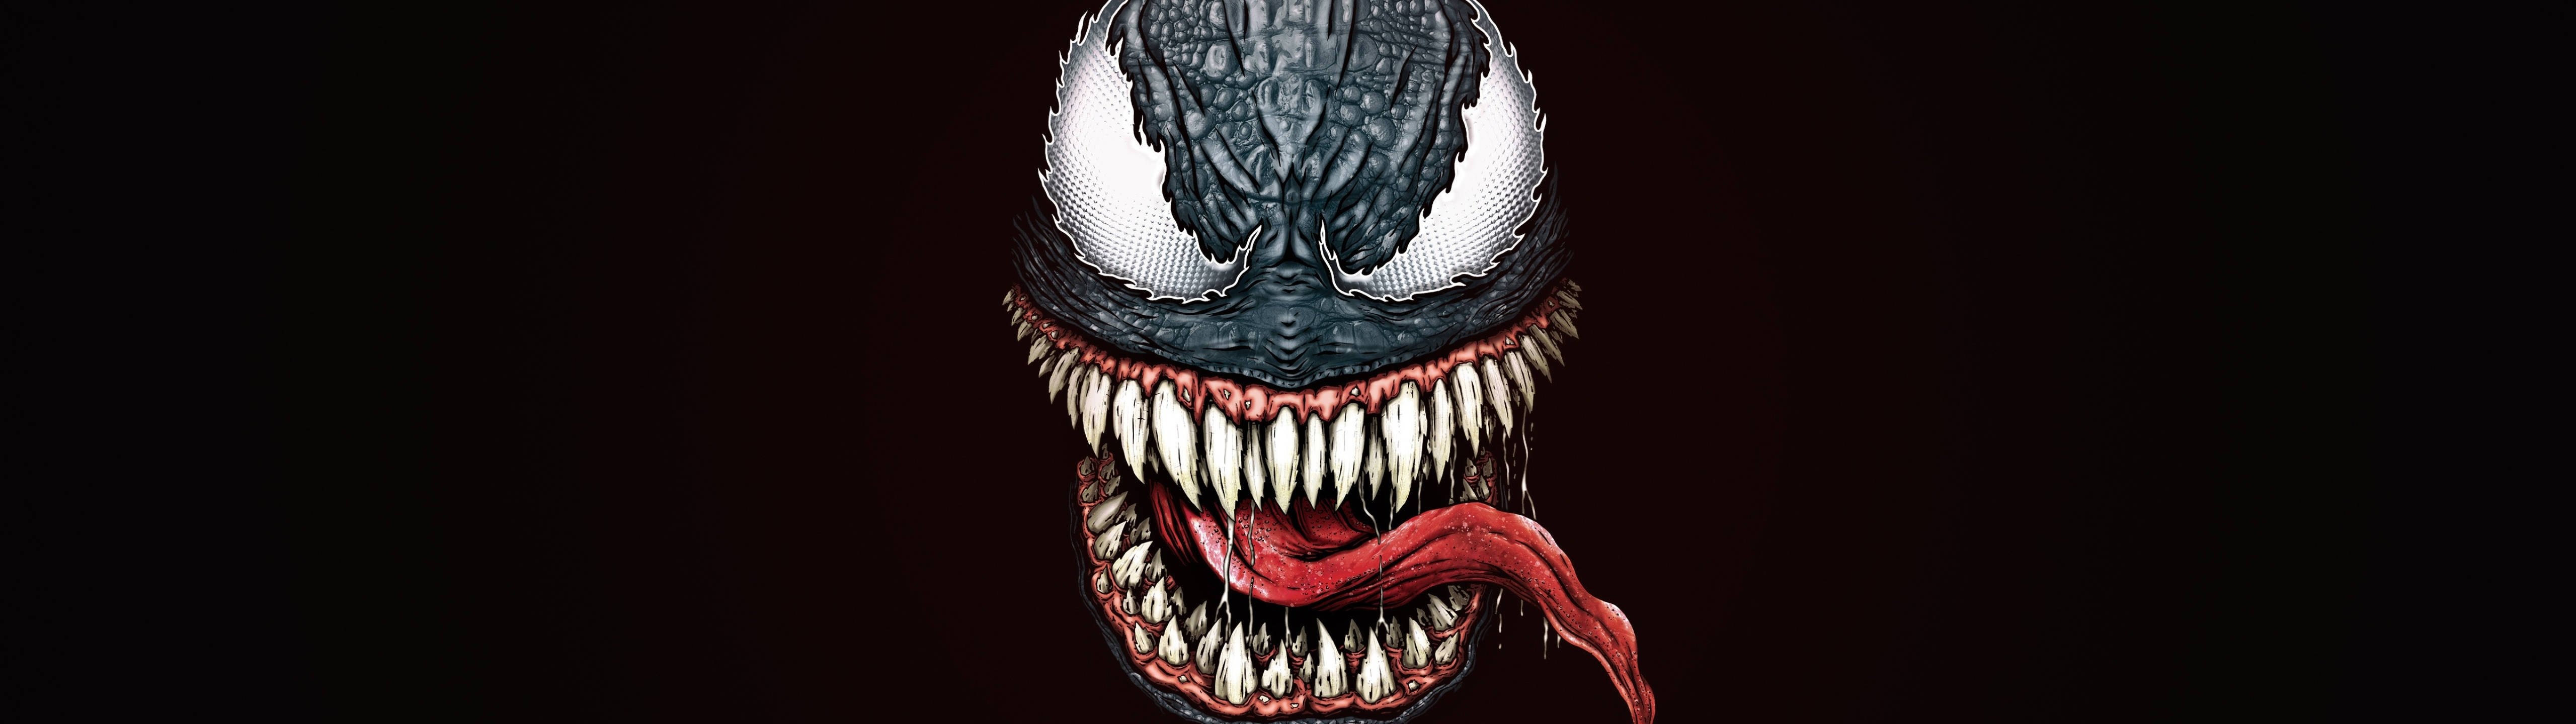 Marvel Antihero Venom 5120 X 1440